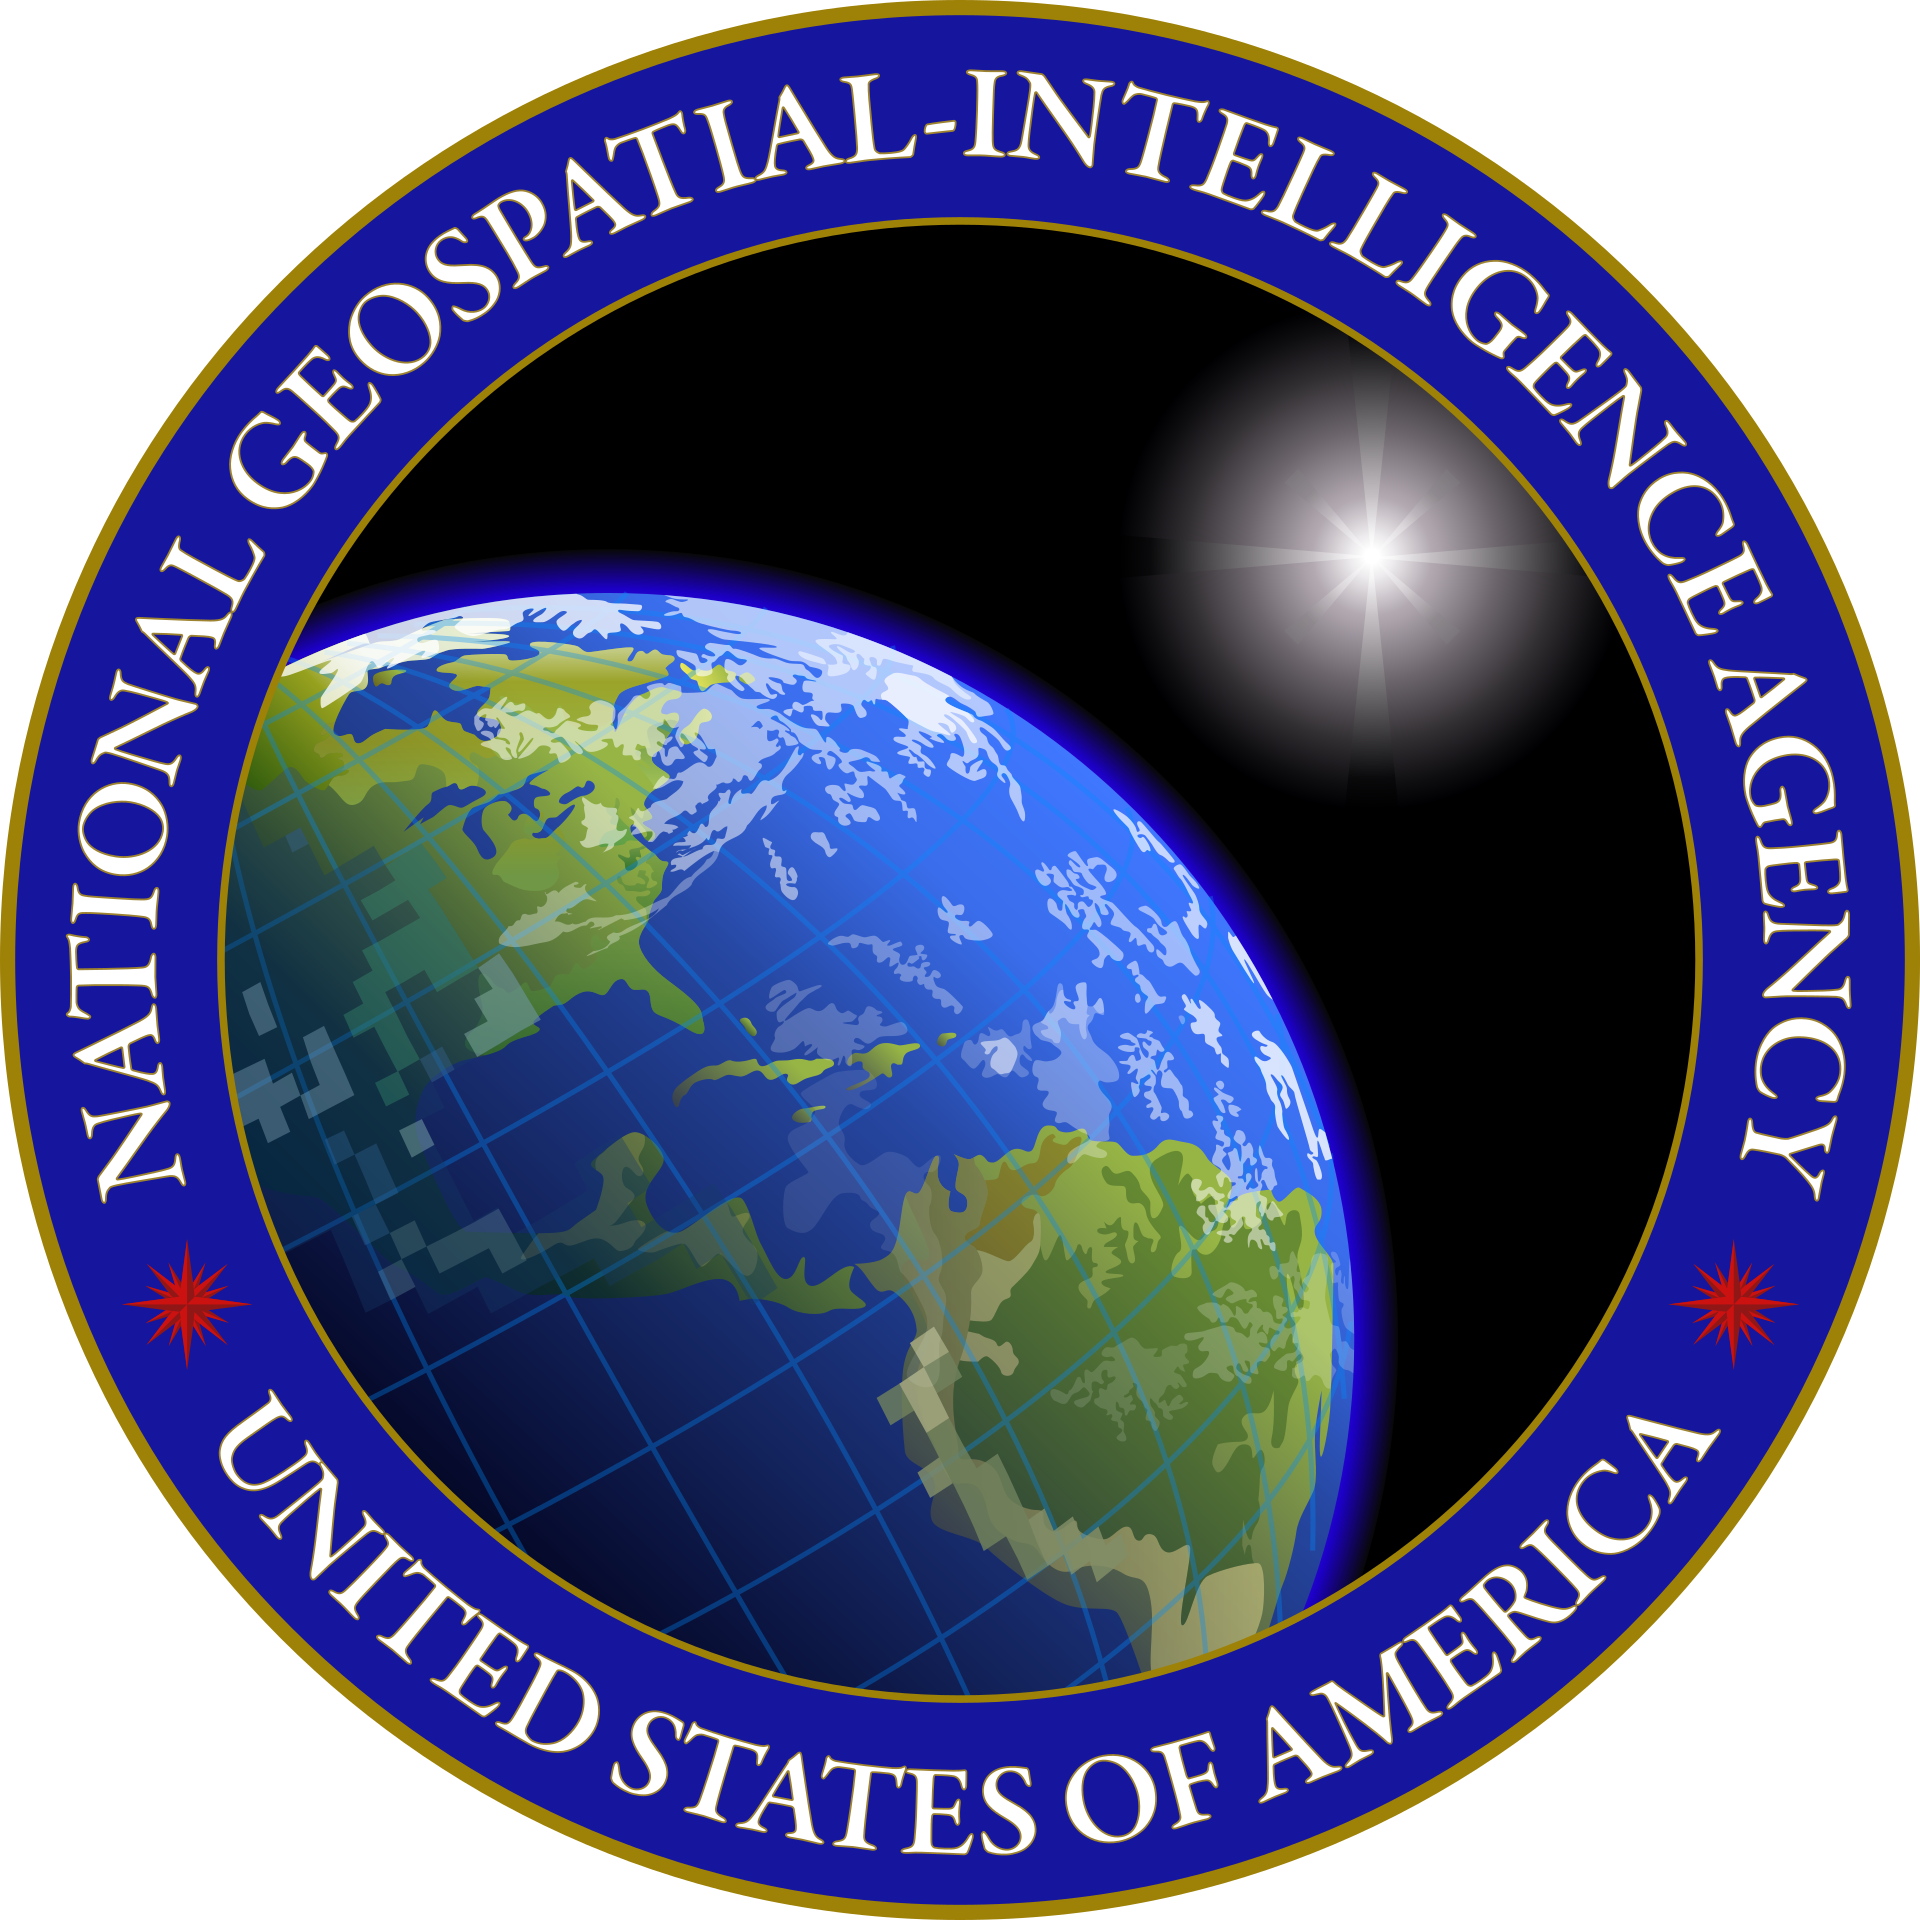 U.S. Department of Defense - NGA - National Geospatial-Intelligence Agency - Национальное агентство геопространственной разведки - Агентство военной картографии